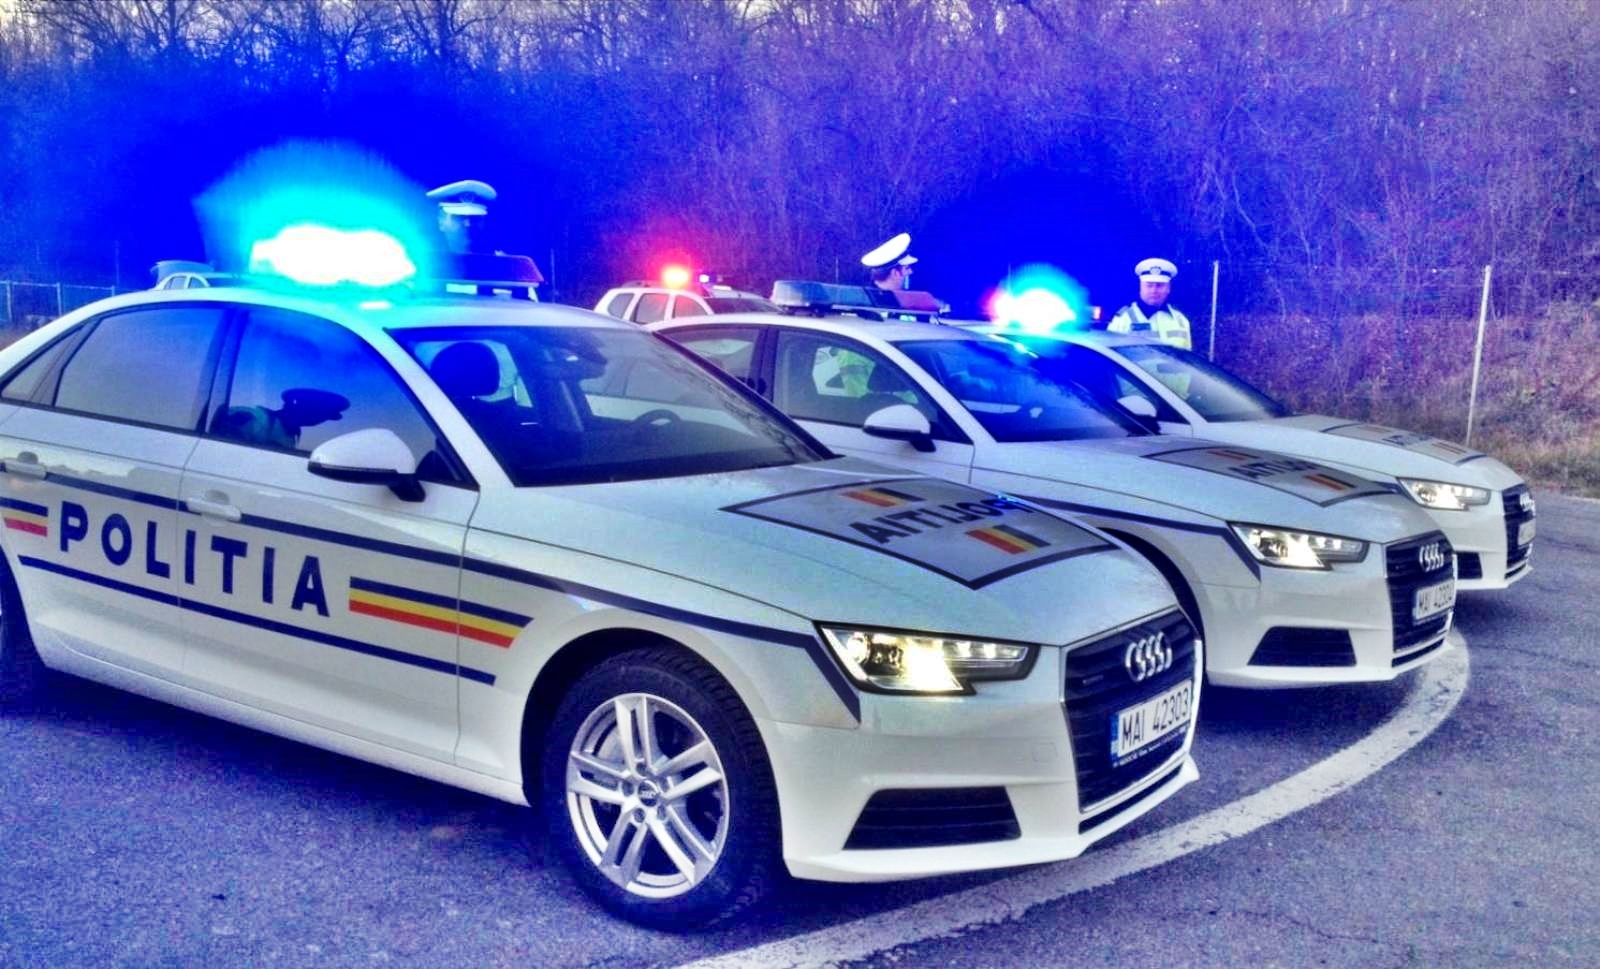 Nachricht der rumänischen Polizei mit einer Bitte an rumänische Fahrer